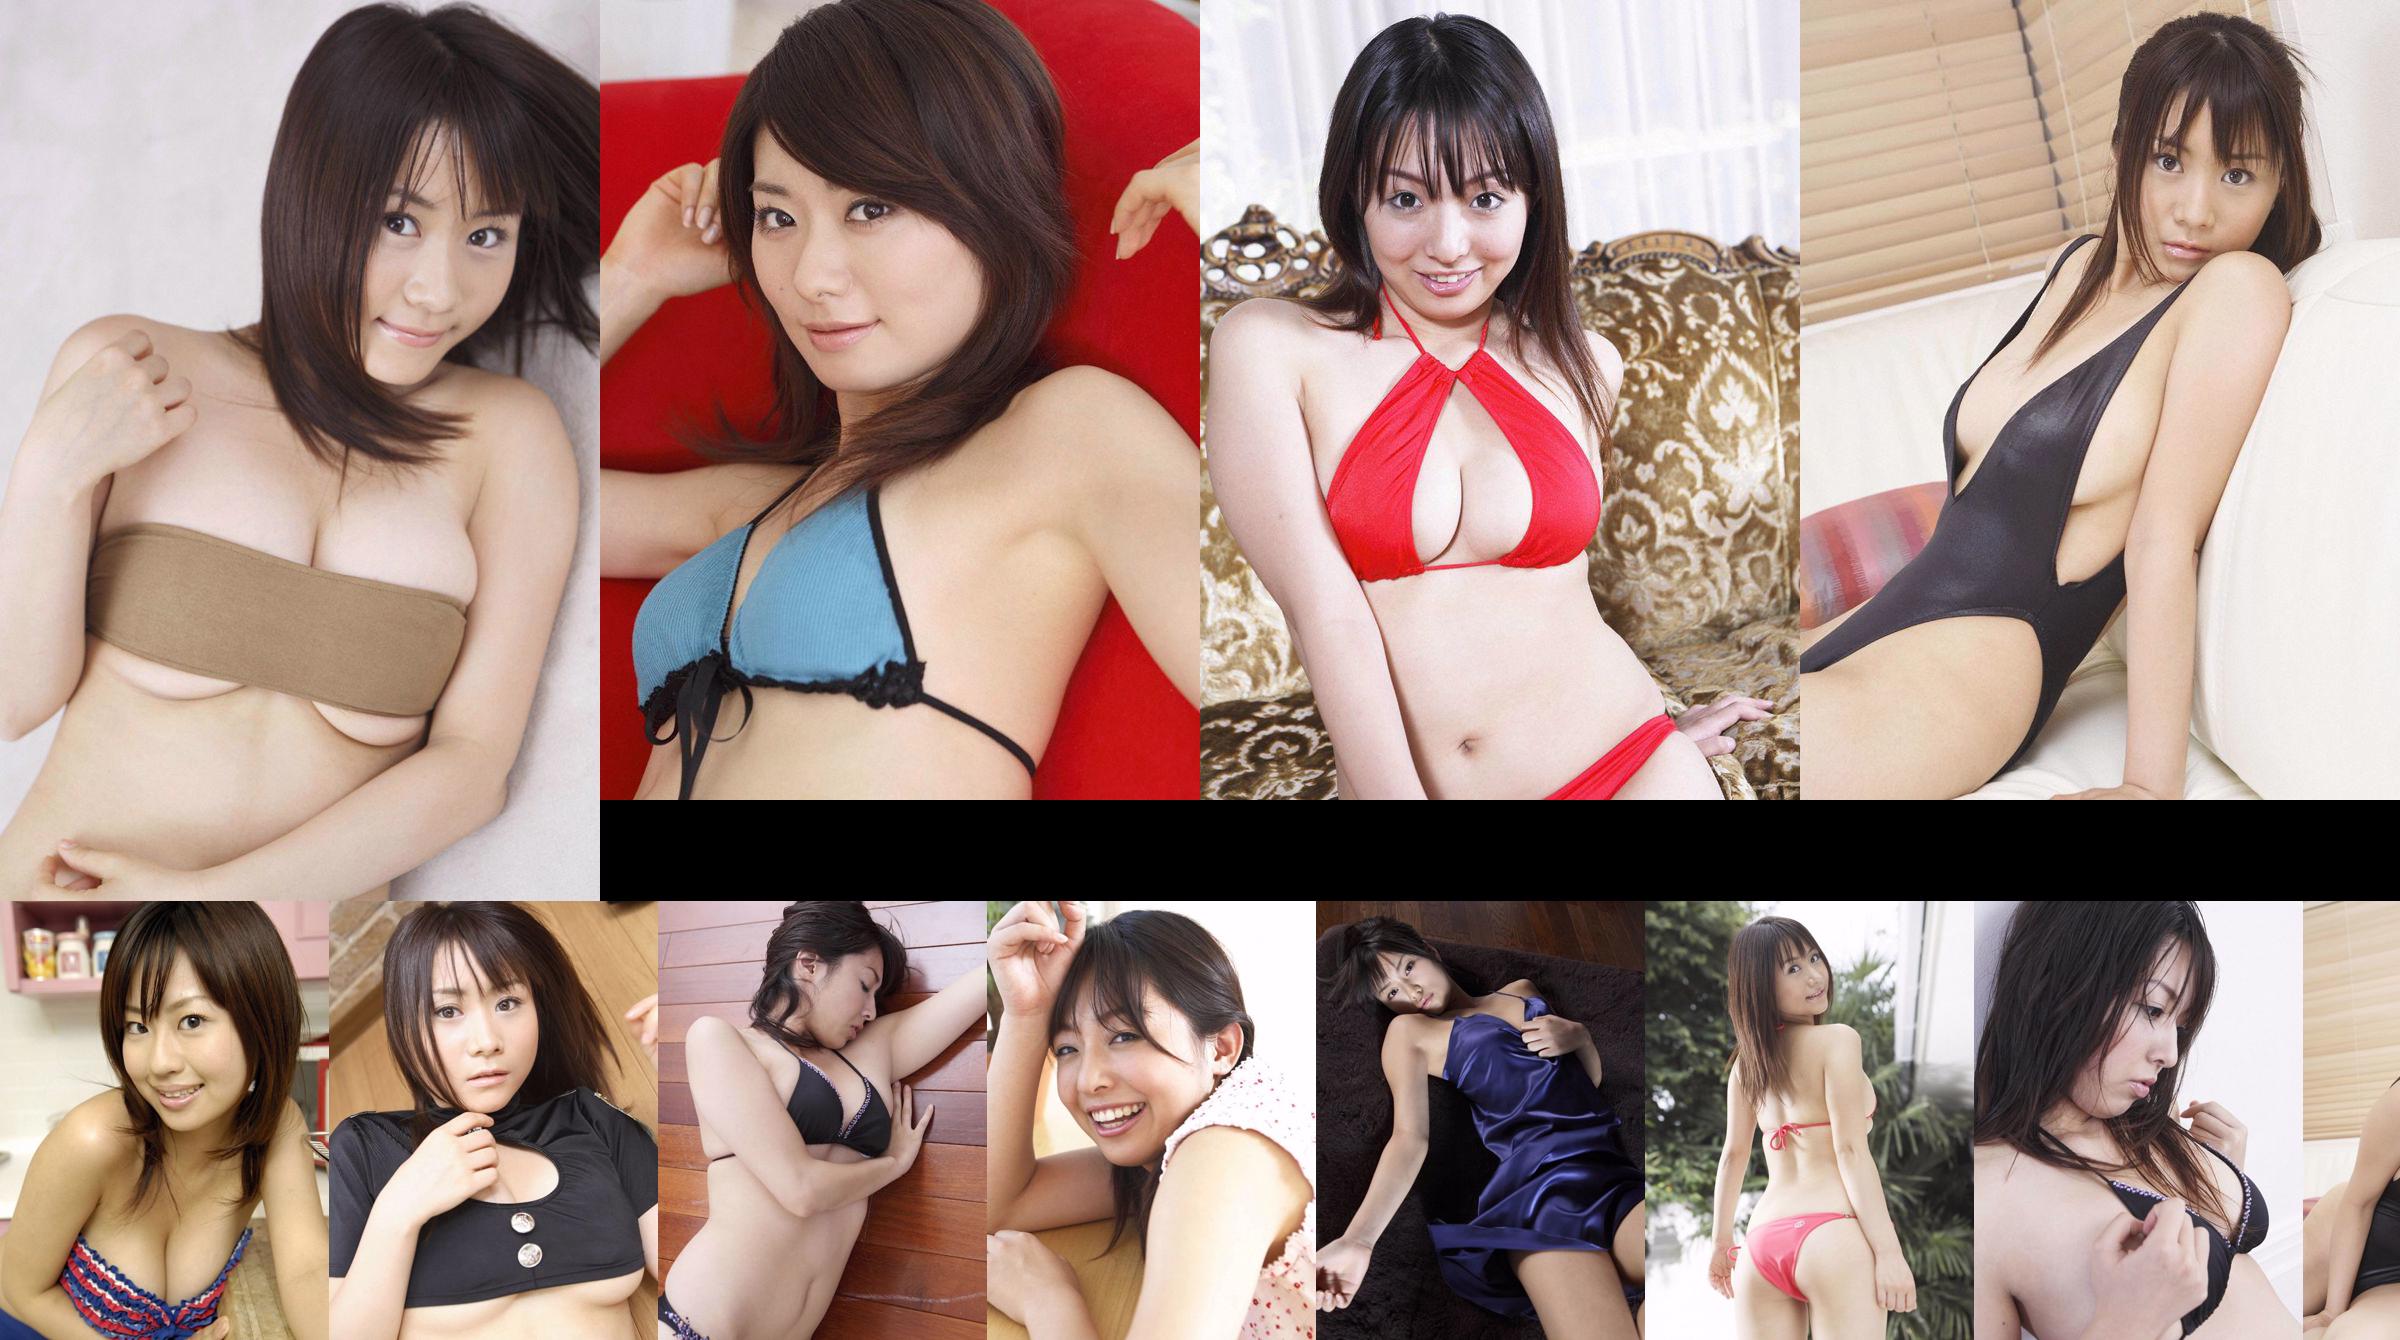 [Wanibooks] NO.37 Ai Arakawa, Hitomi Kaikawa, Hitomi Kitamura, Naomi I, Chii Matsuda Photo Collection No.94d573 Page 35